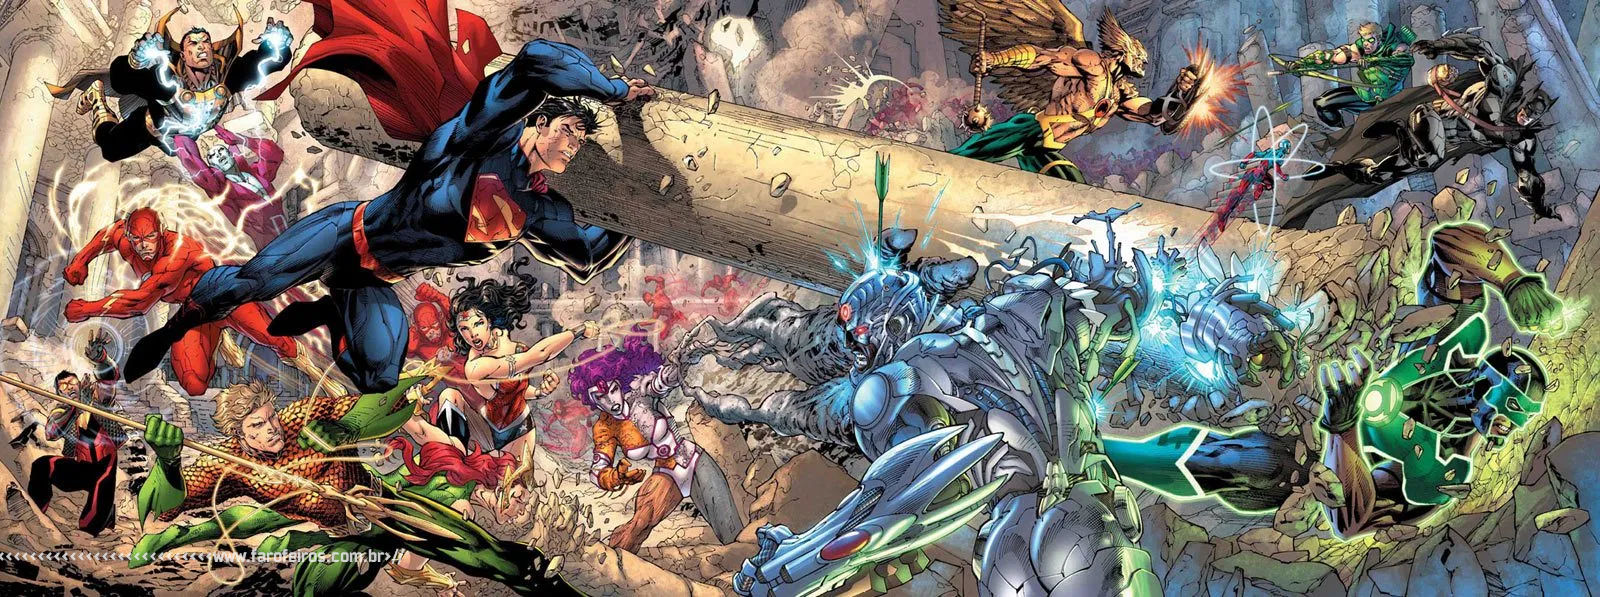 Com o fim de Trinity War a maldade fica relativa - Jim Lee - DC Comics - Blog Farofeiros